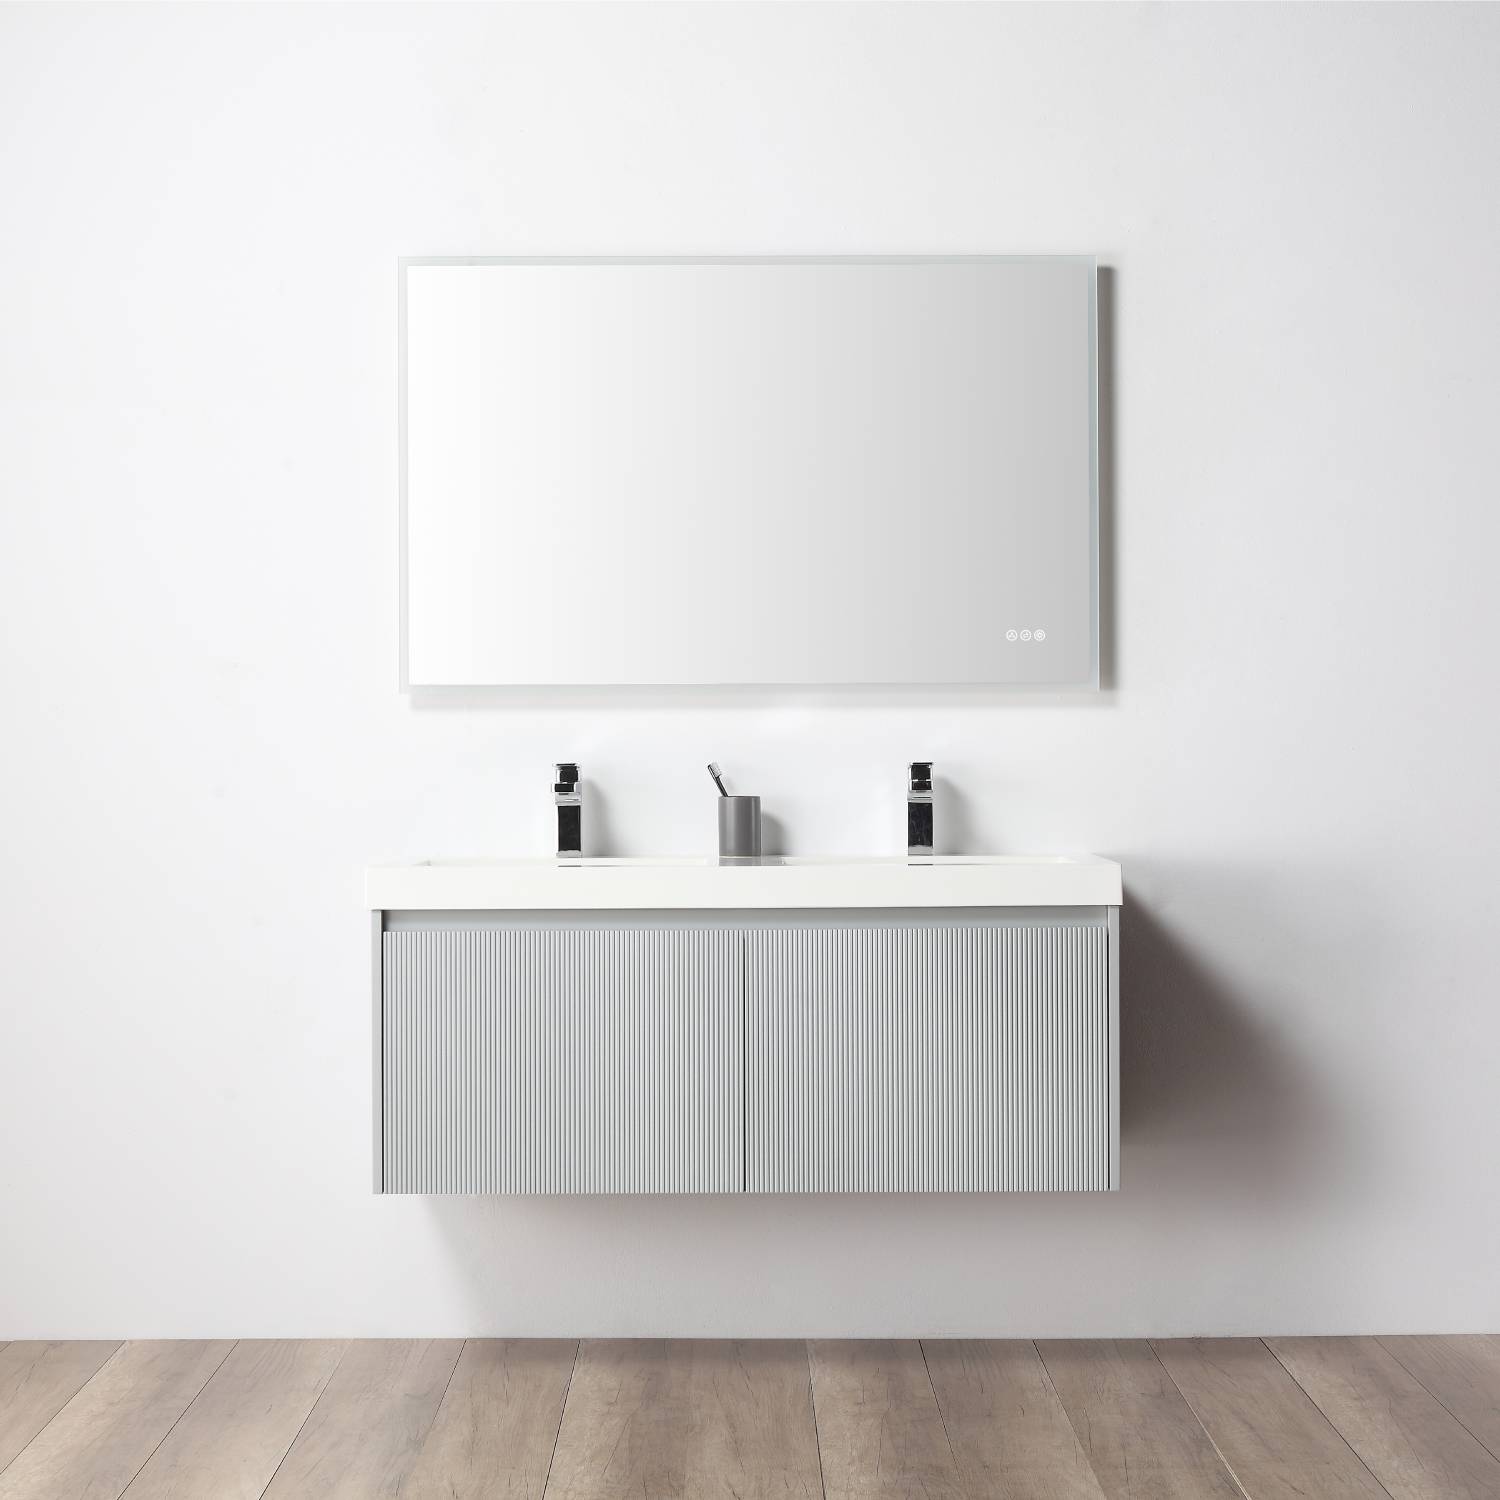 Positano 48" Bathroom Vanity  #size_48" Double  #color_light grey